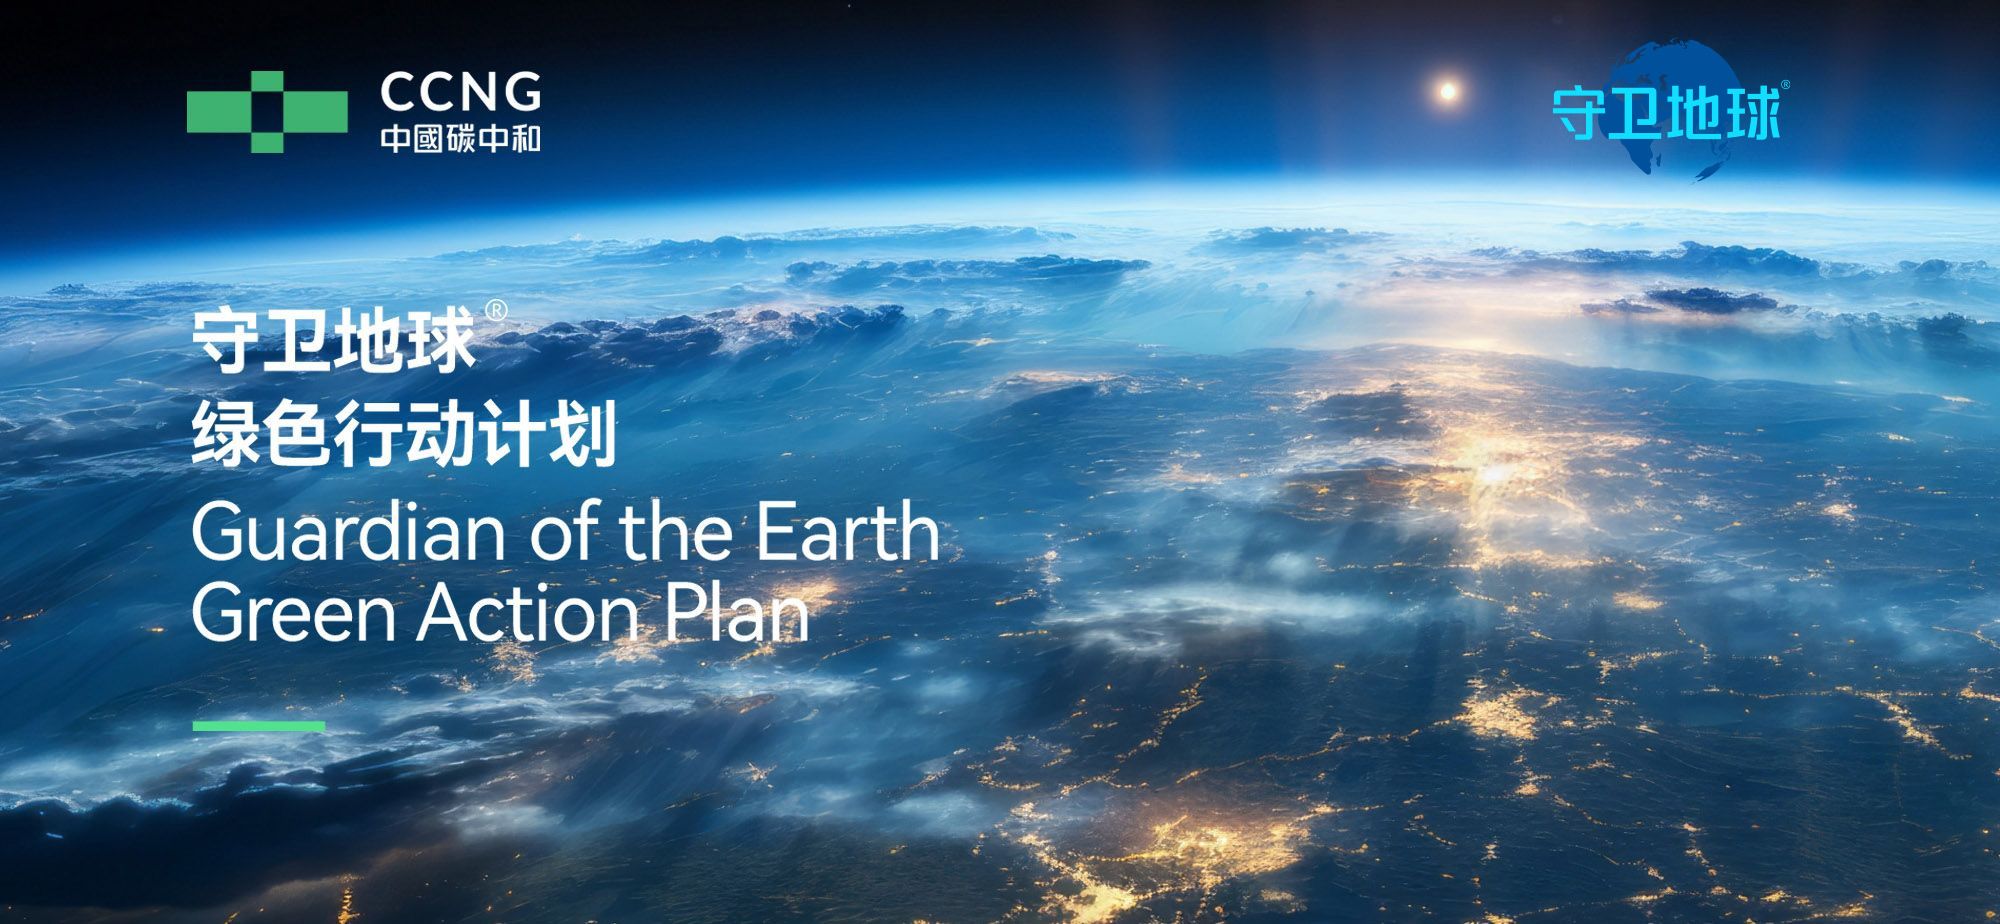 中國碳中和（01372.HK）正式啟動“守衛地球”綠色行動計劃